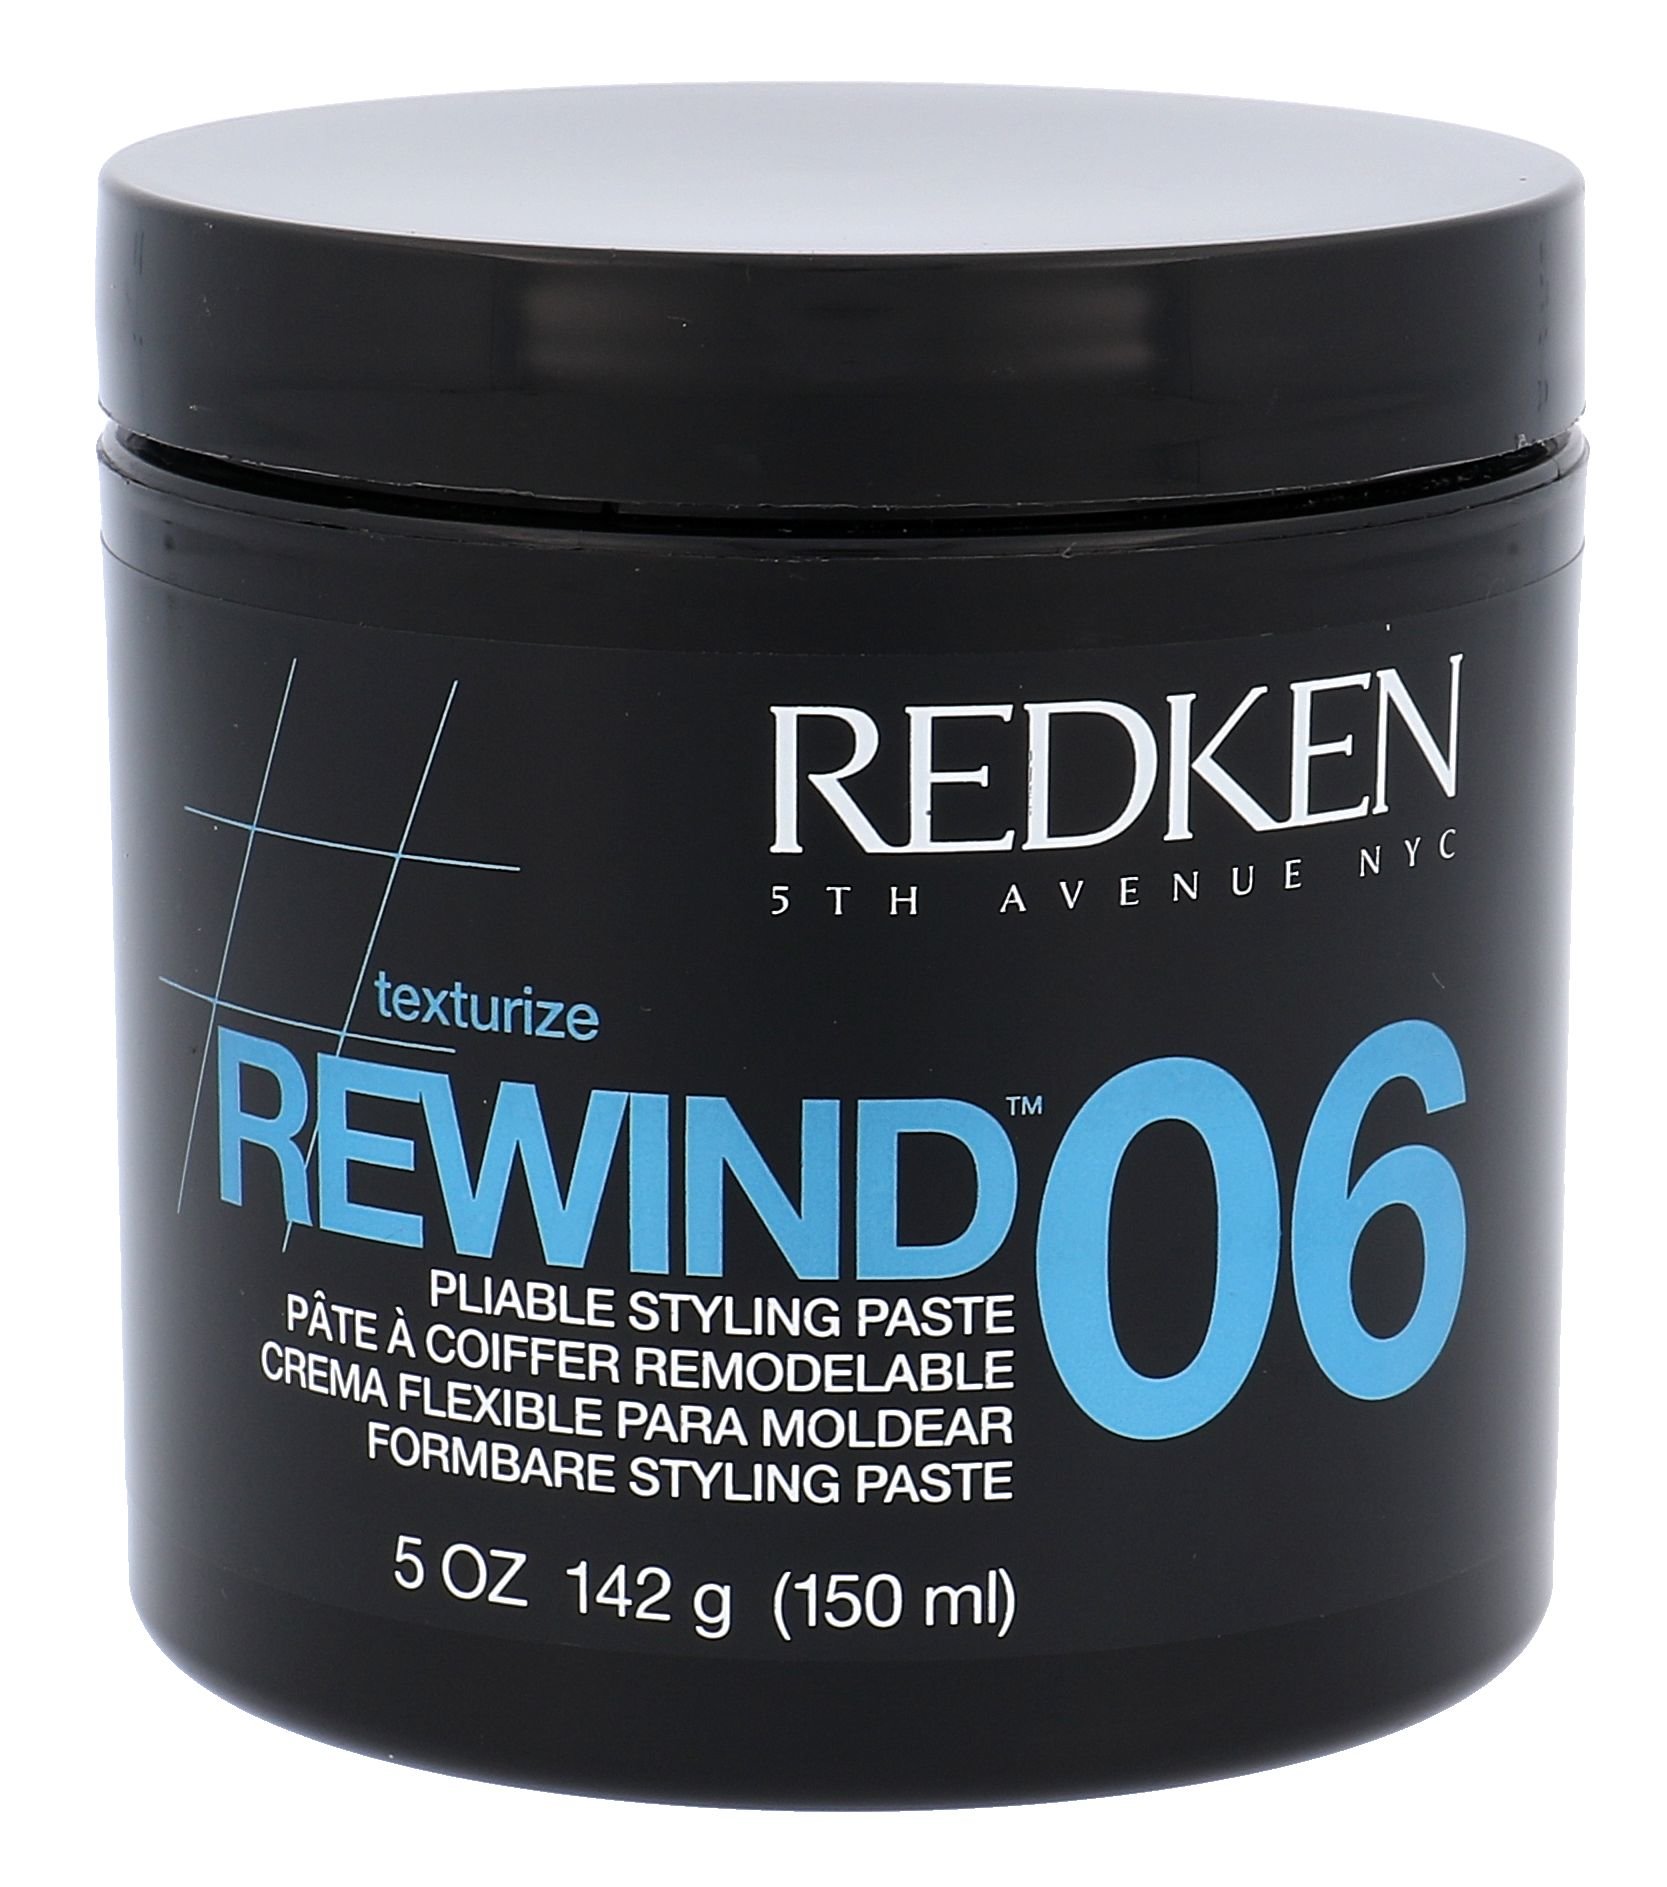 Redken Texture Rewind 06